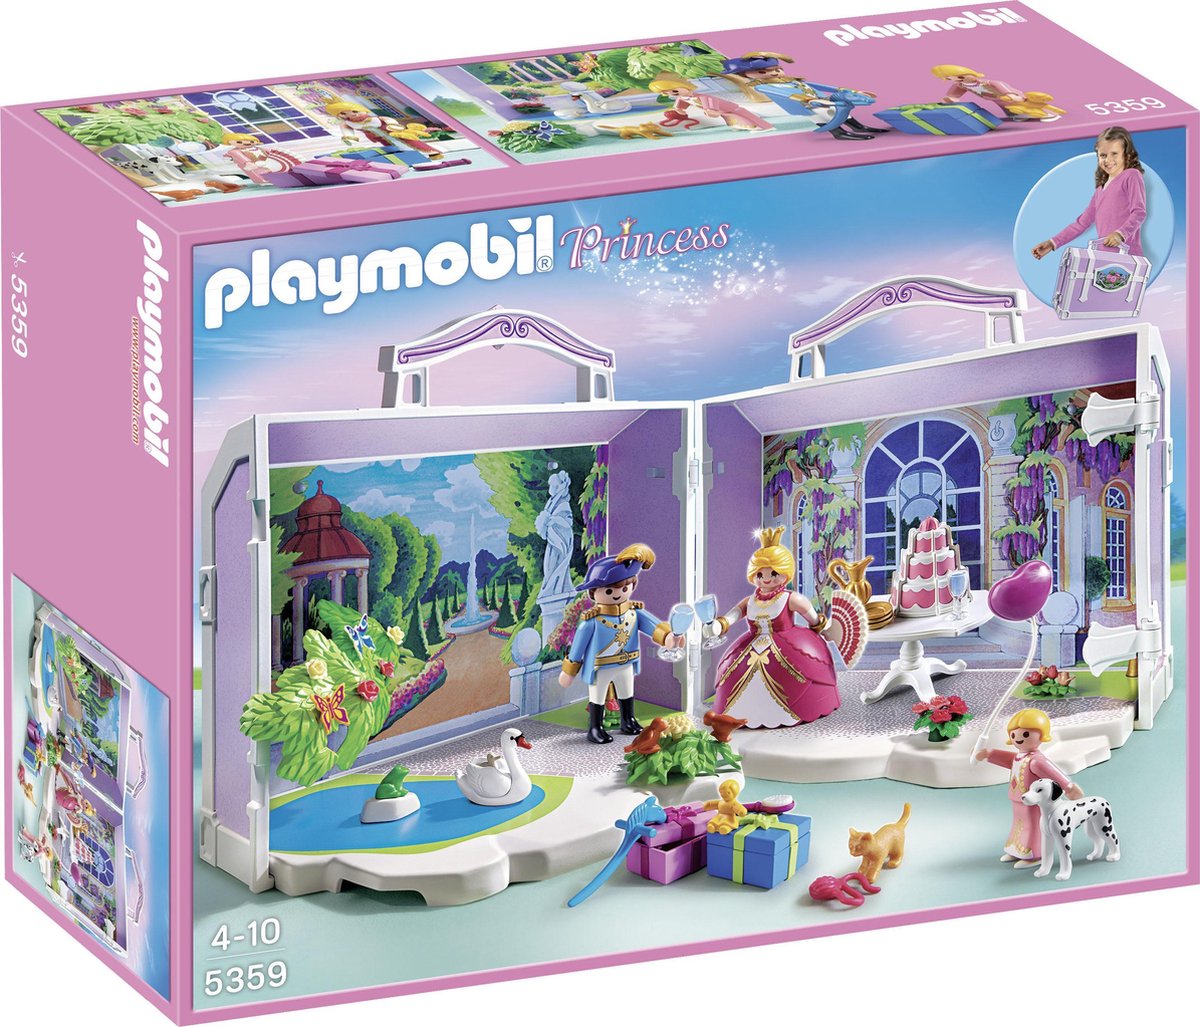 Playmobil Princess Housse de transport d'anniversaire - 5359